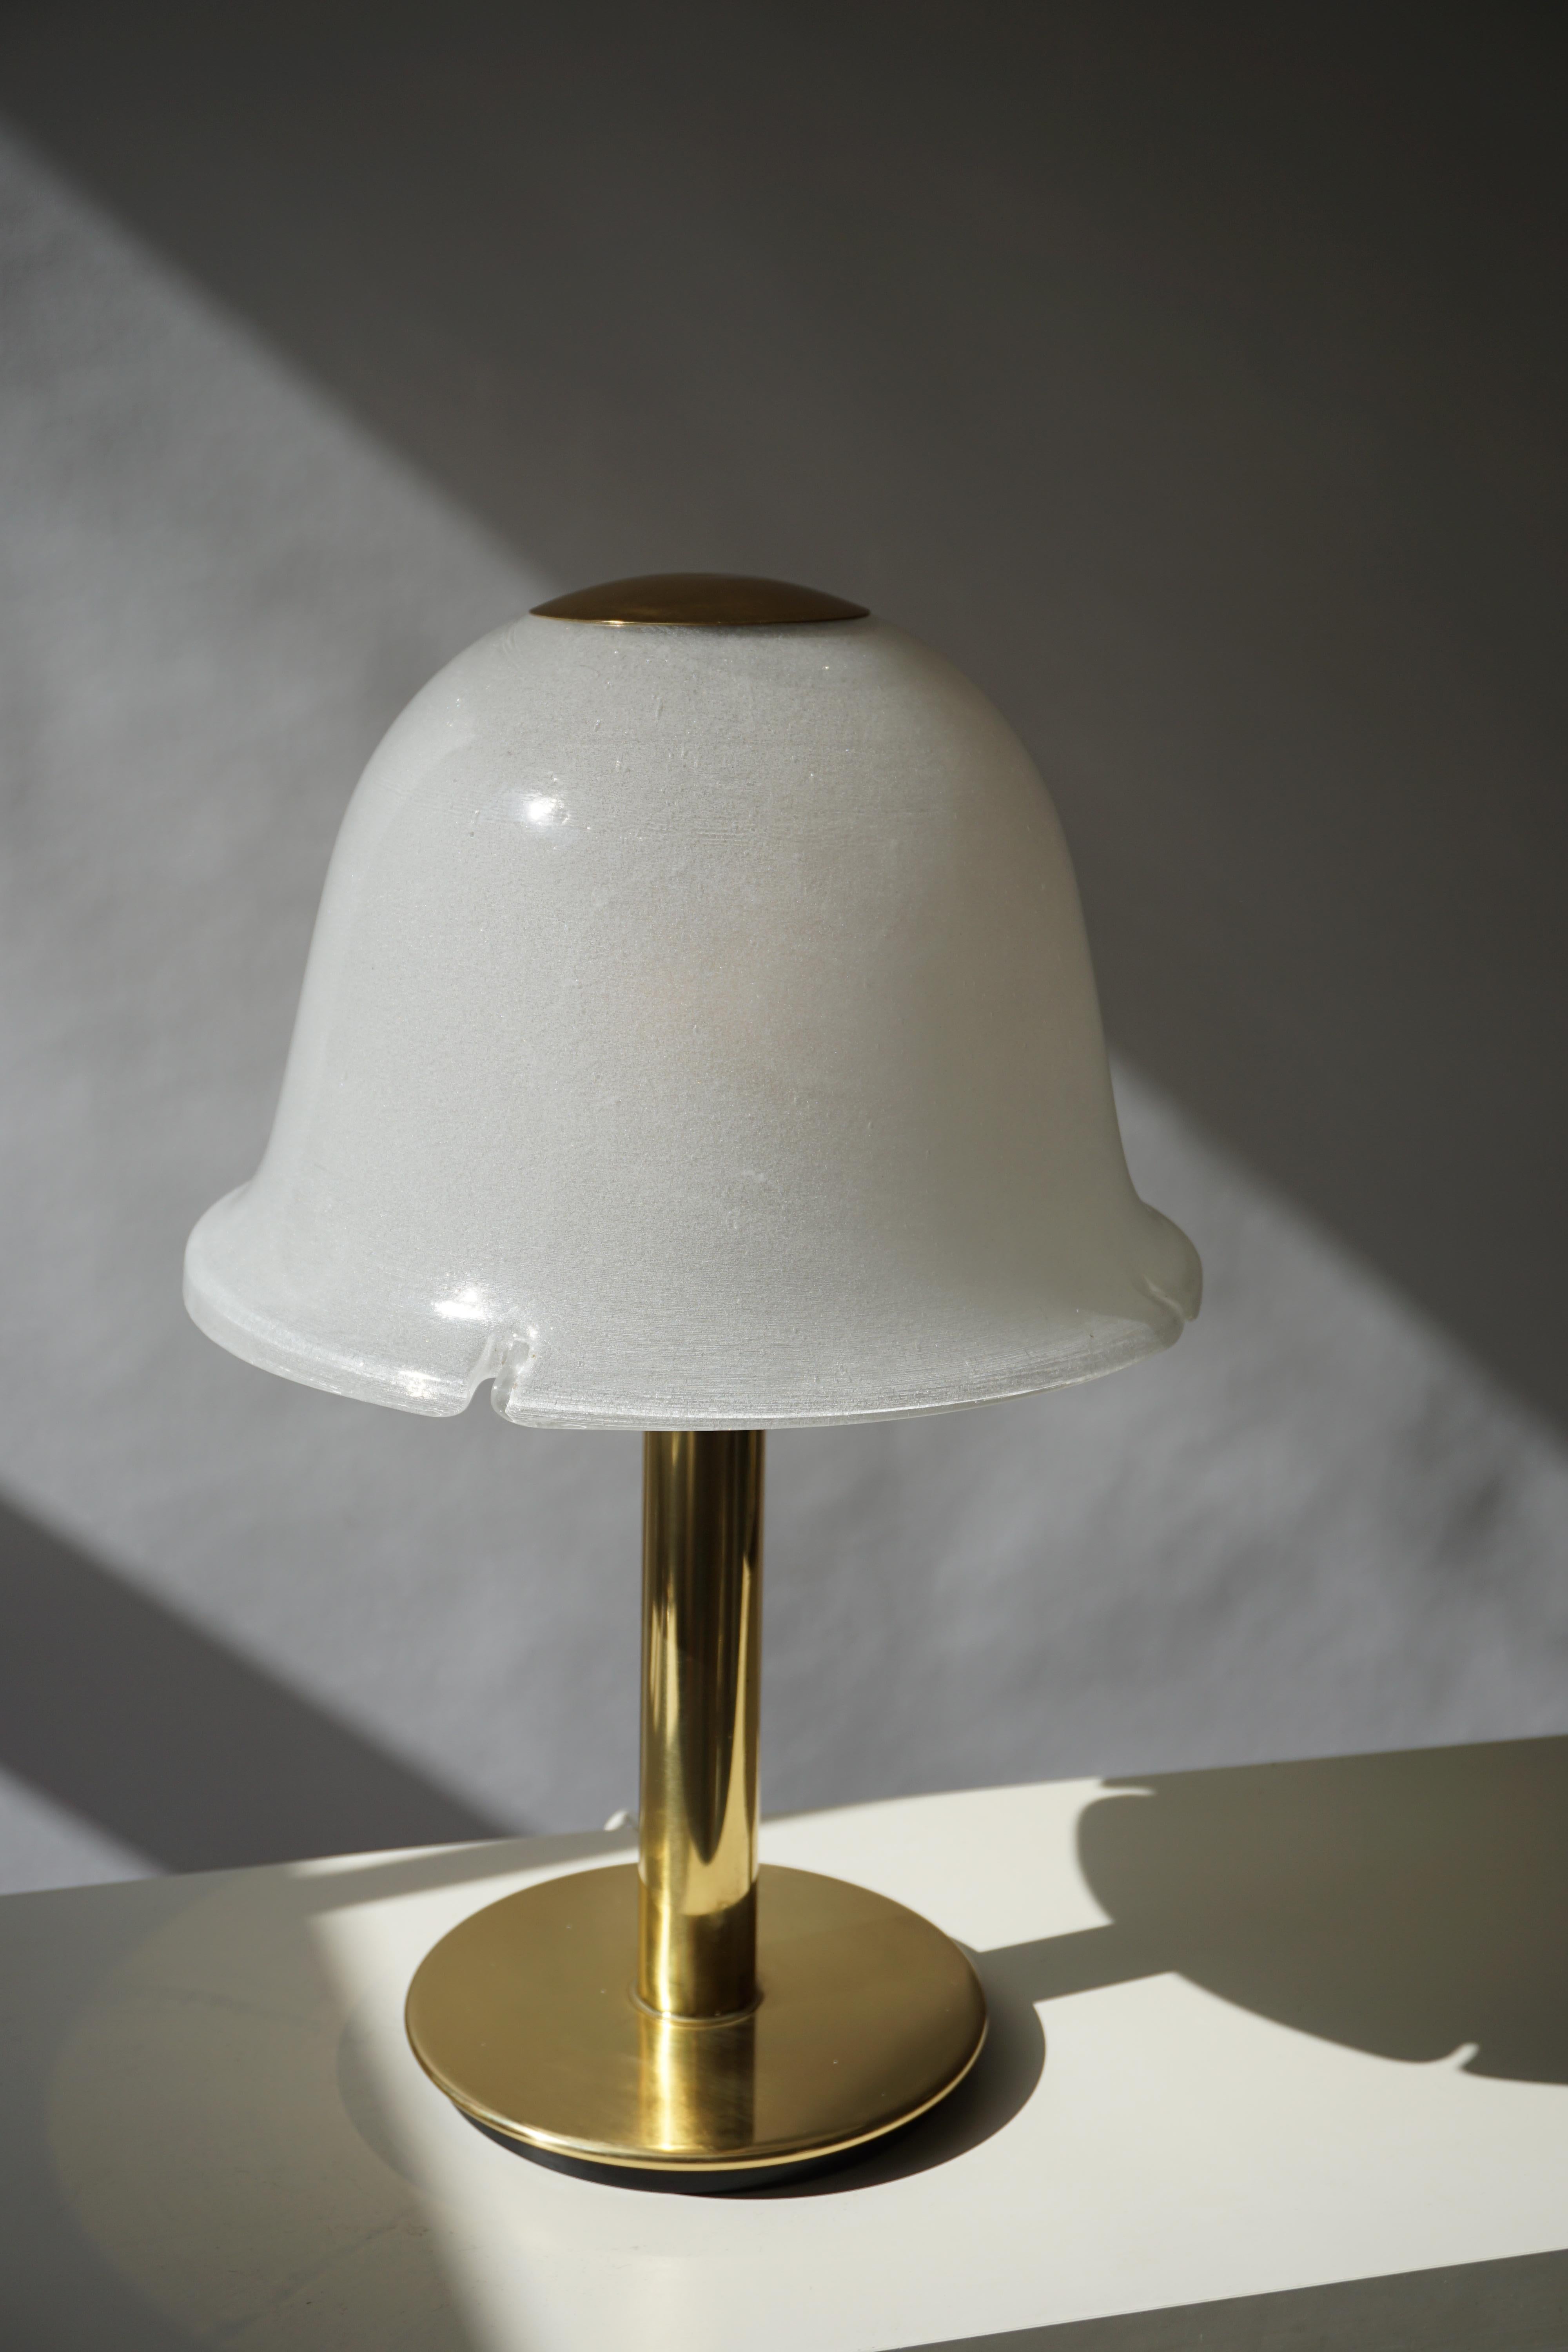 Lampe de table italienne en verre de Murano et laiton.
Mesures : Diamètre 36 cm.
Hauteur 56 cm.
Une ampoule E27.